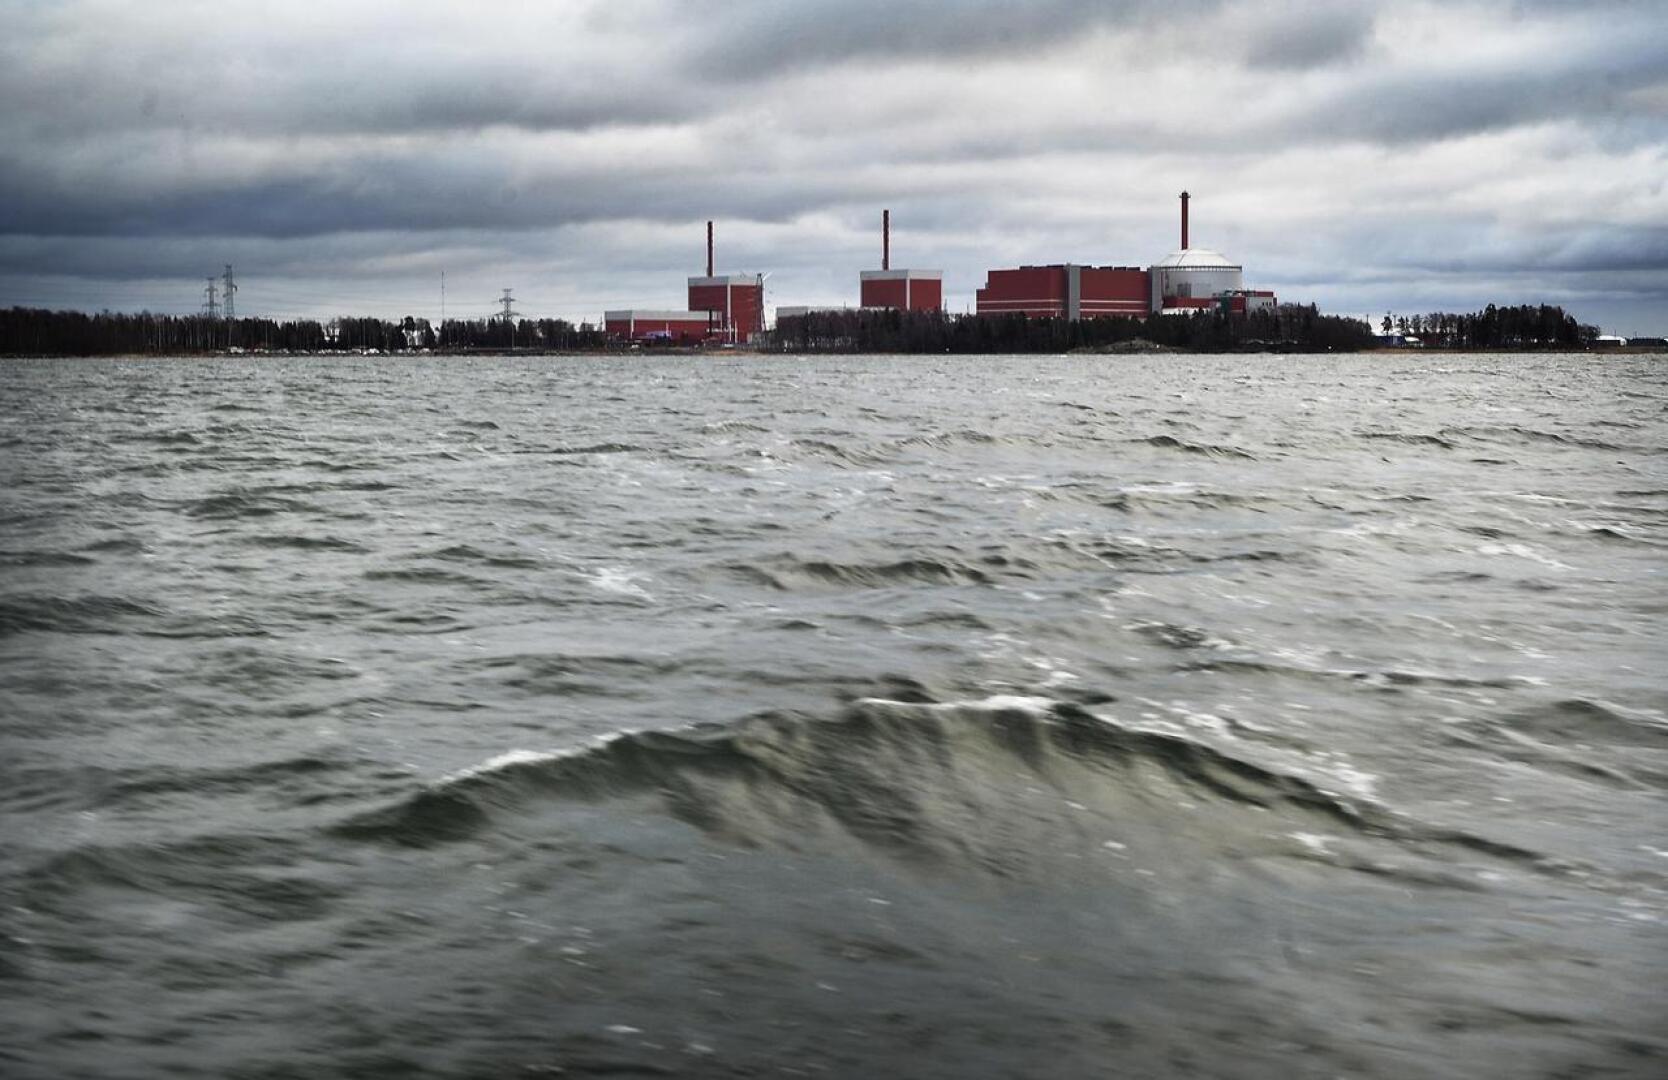 Suomessa ydinvoimalat rakennetaan meren rantaan, koska merivettä käytetään voimaloiden tuottaman vesihöyryn lauhduttamiseen takaisin nestemäiseksi vedeksi. Olkiluodon ydinvoimala vuonna 2017.